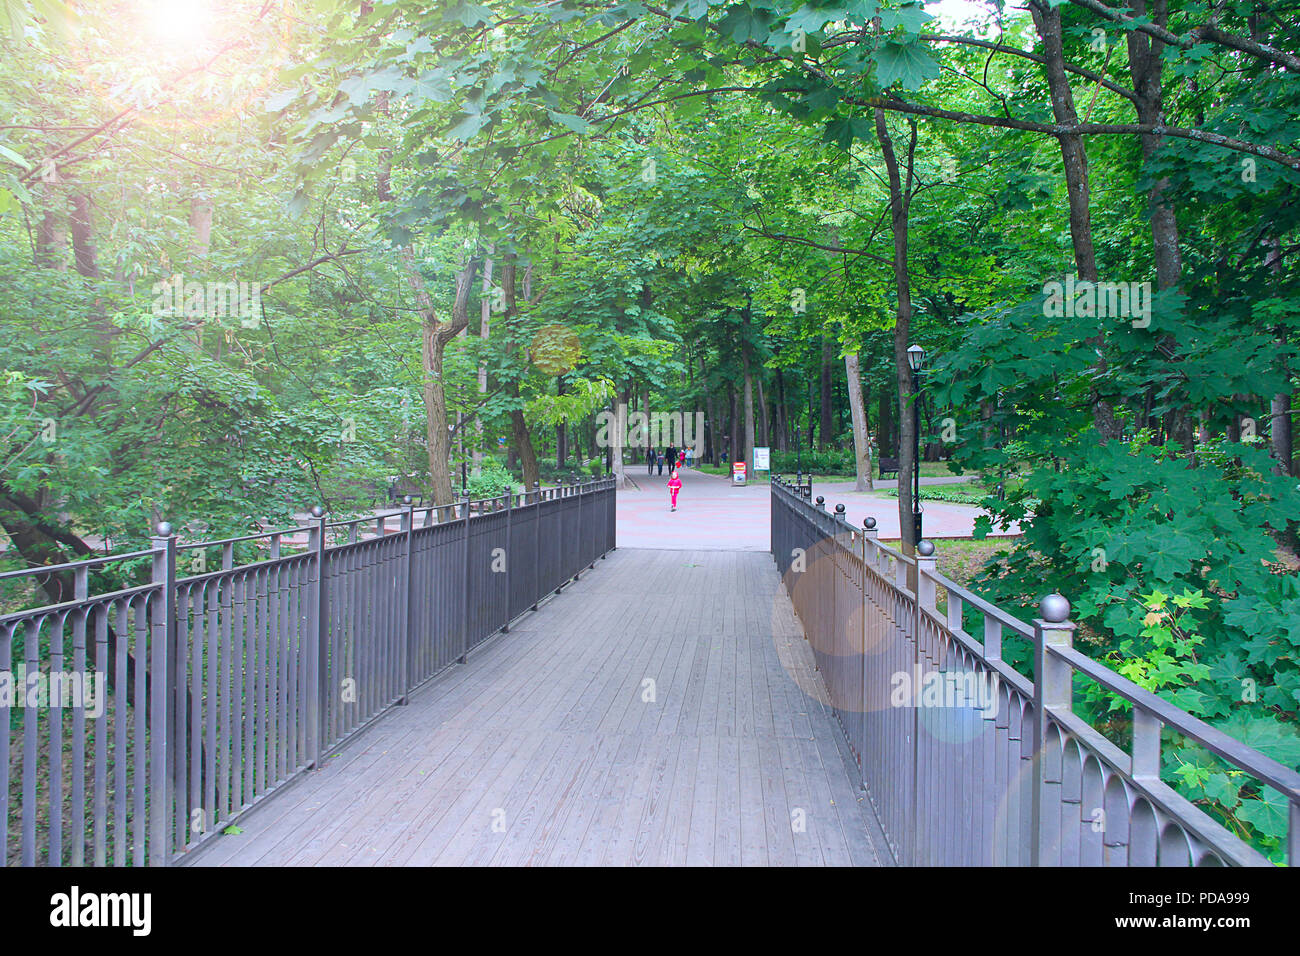 Ponte di legno nel parco della città. La gente che camminava sul percorso con il verde degli alberi. Ponte di parco con alberi secolari e il percorso Foto Stock